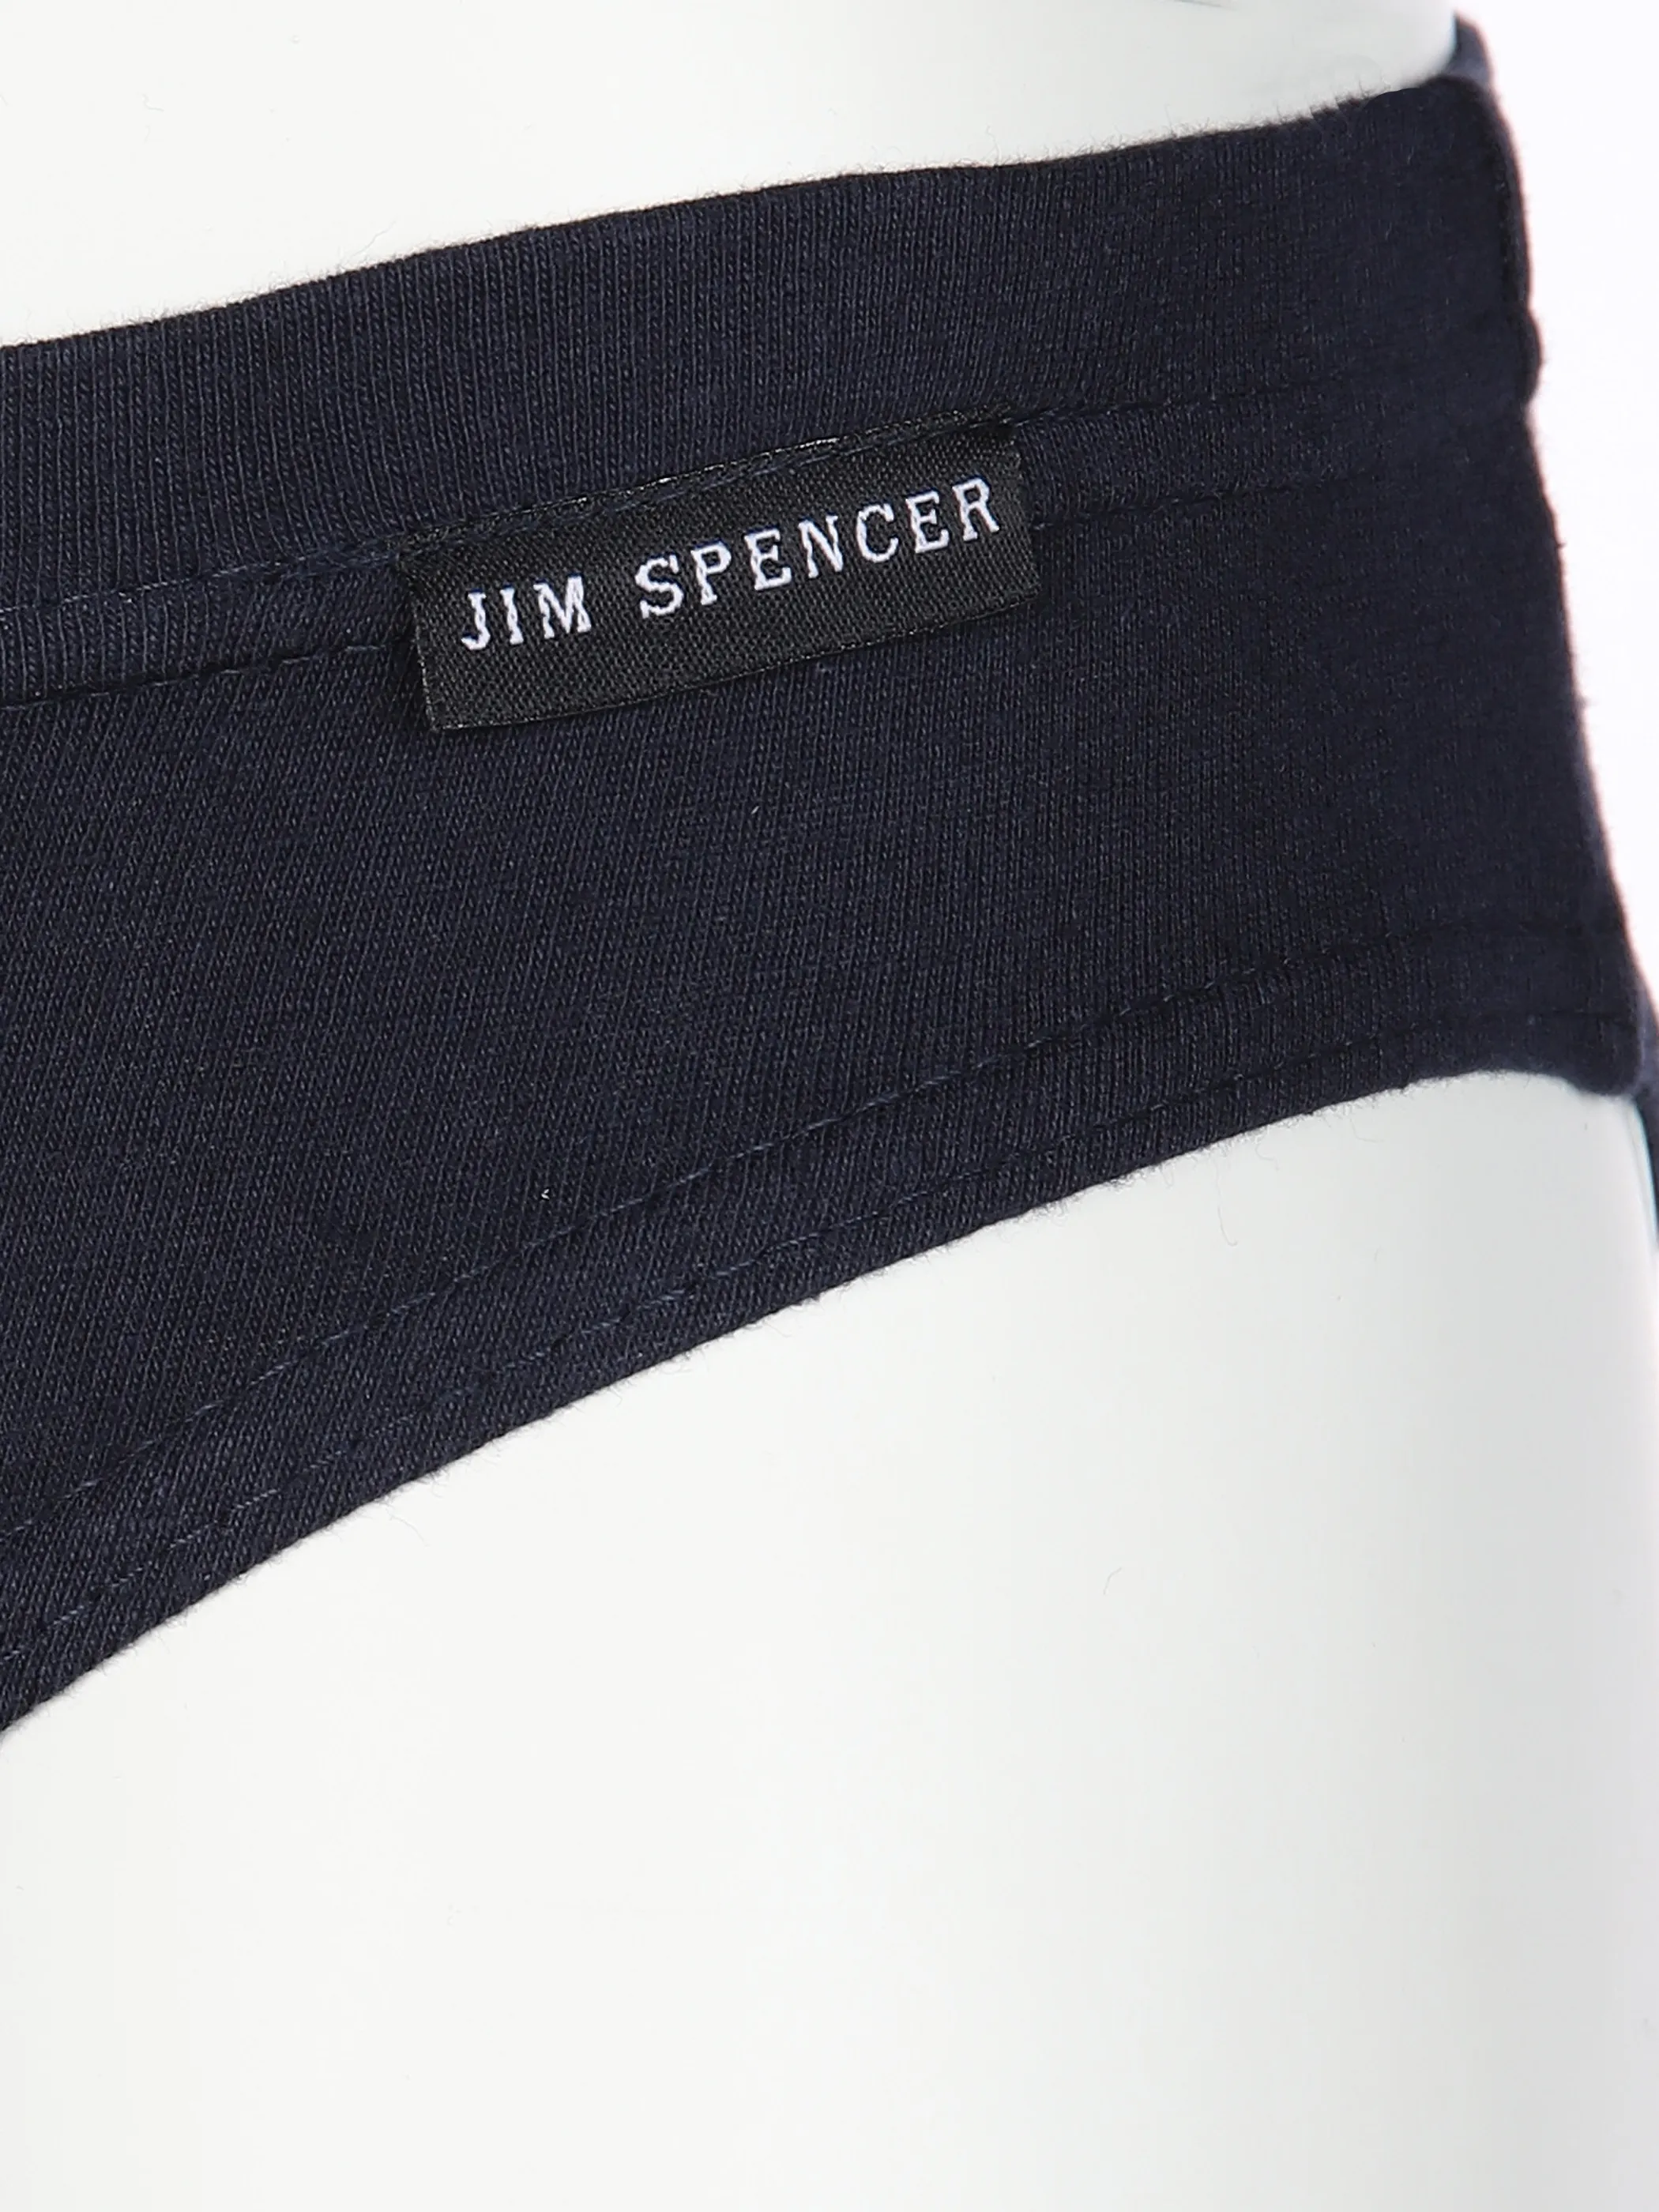 Jim Spencer He-Slip 5er Pack Blau 591100 MARINE 3